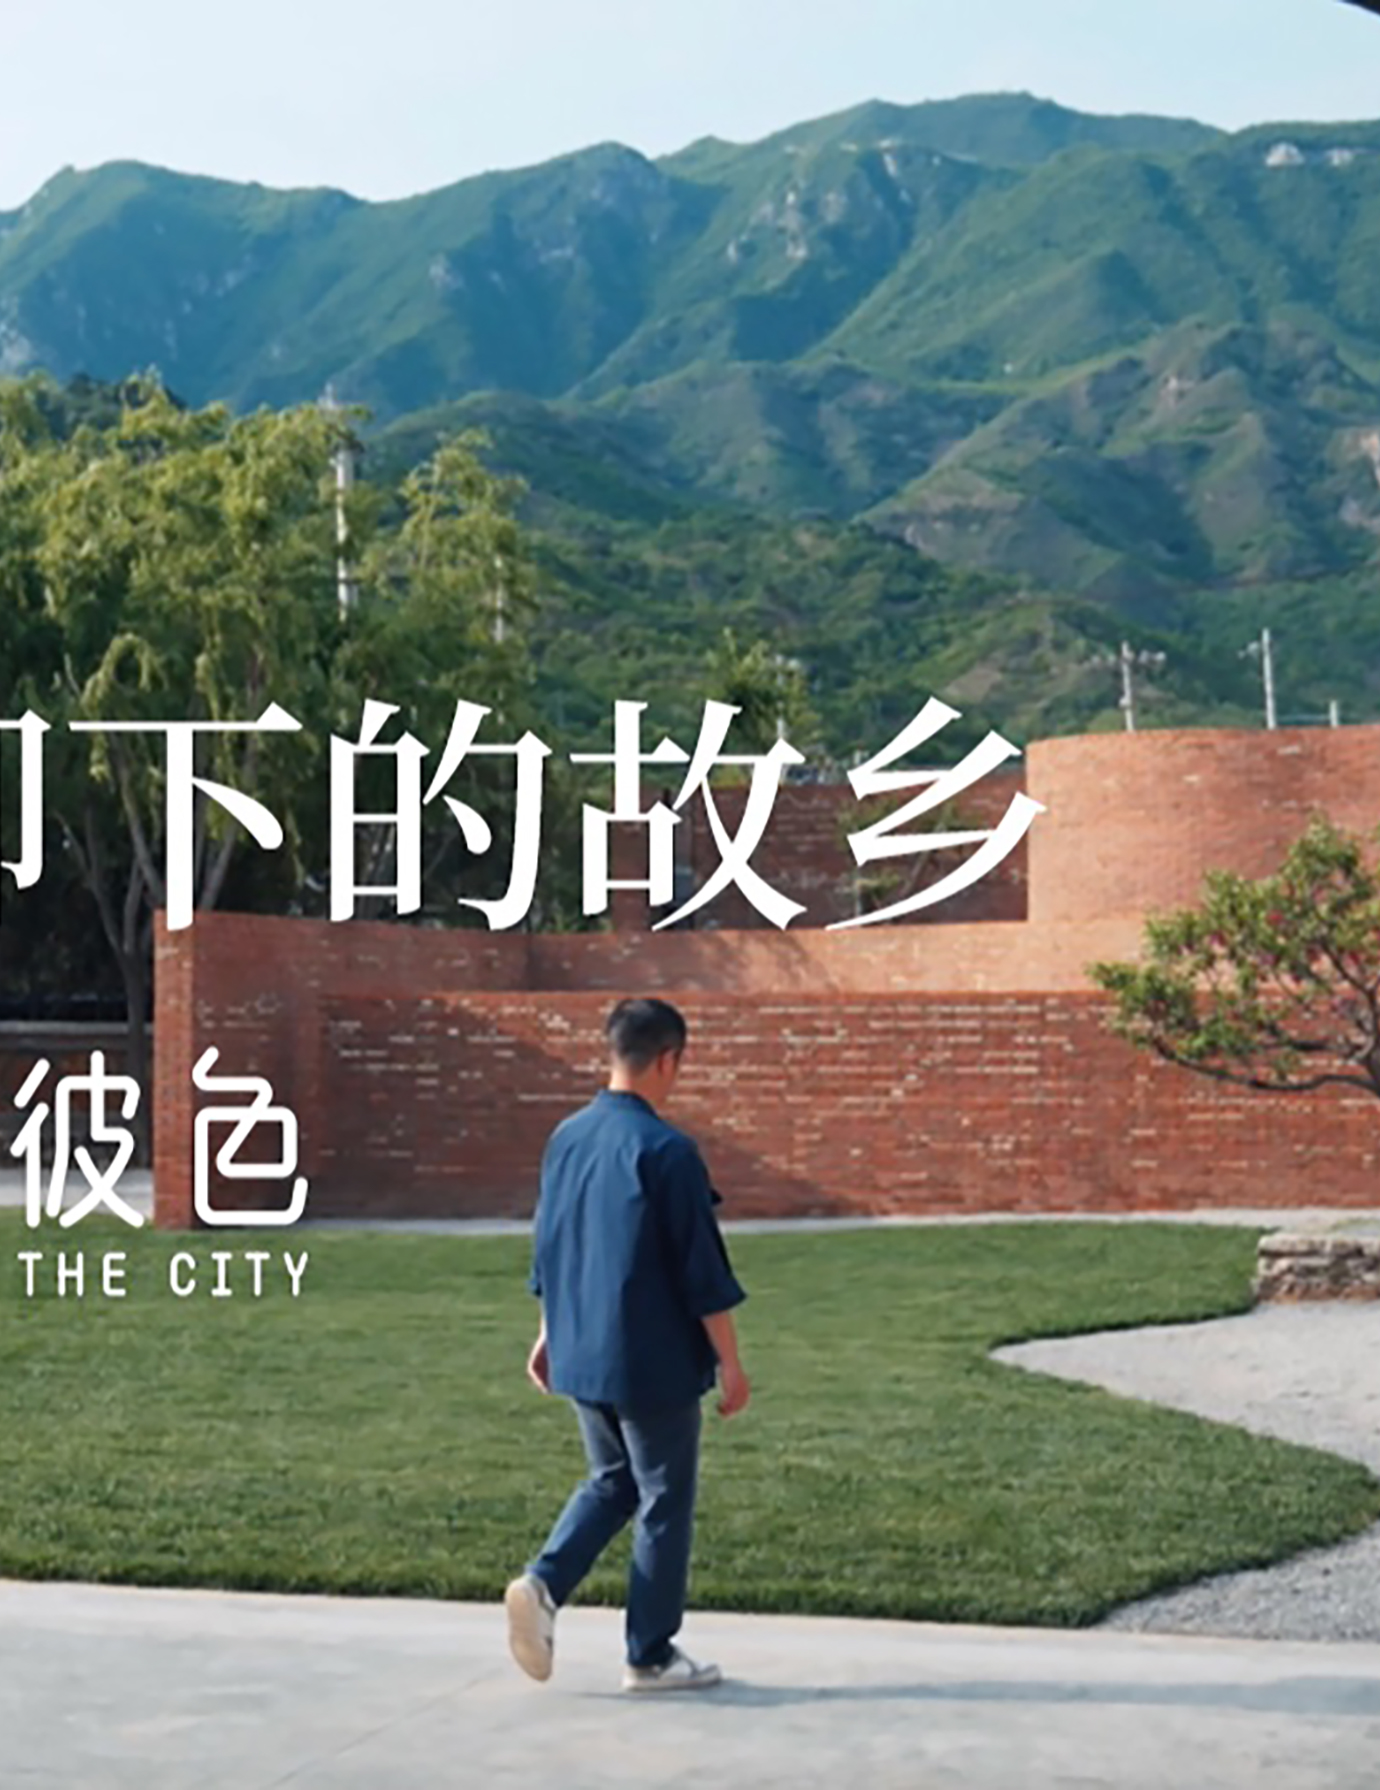 长城脚下做瓦厂改造惊艳全村，建筑师用颜色打造北京度假好去处！